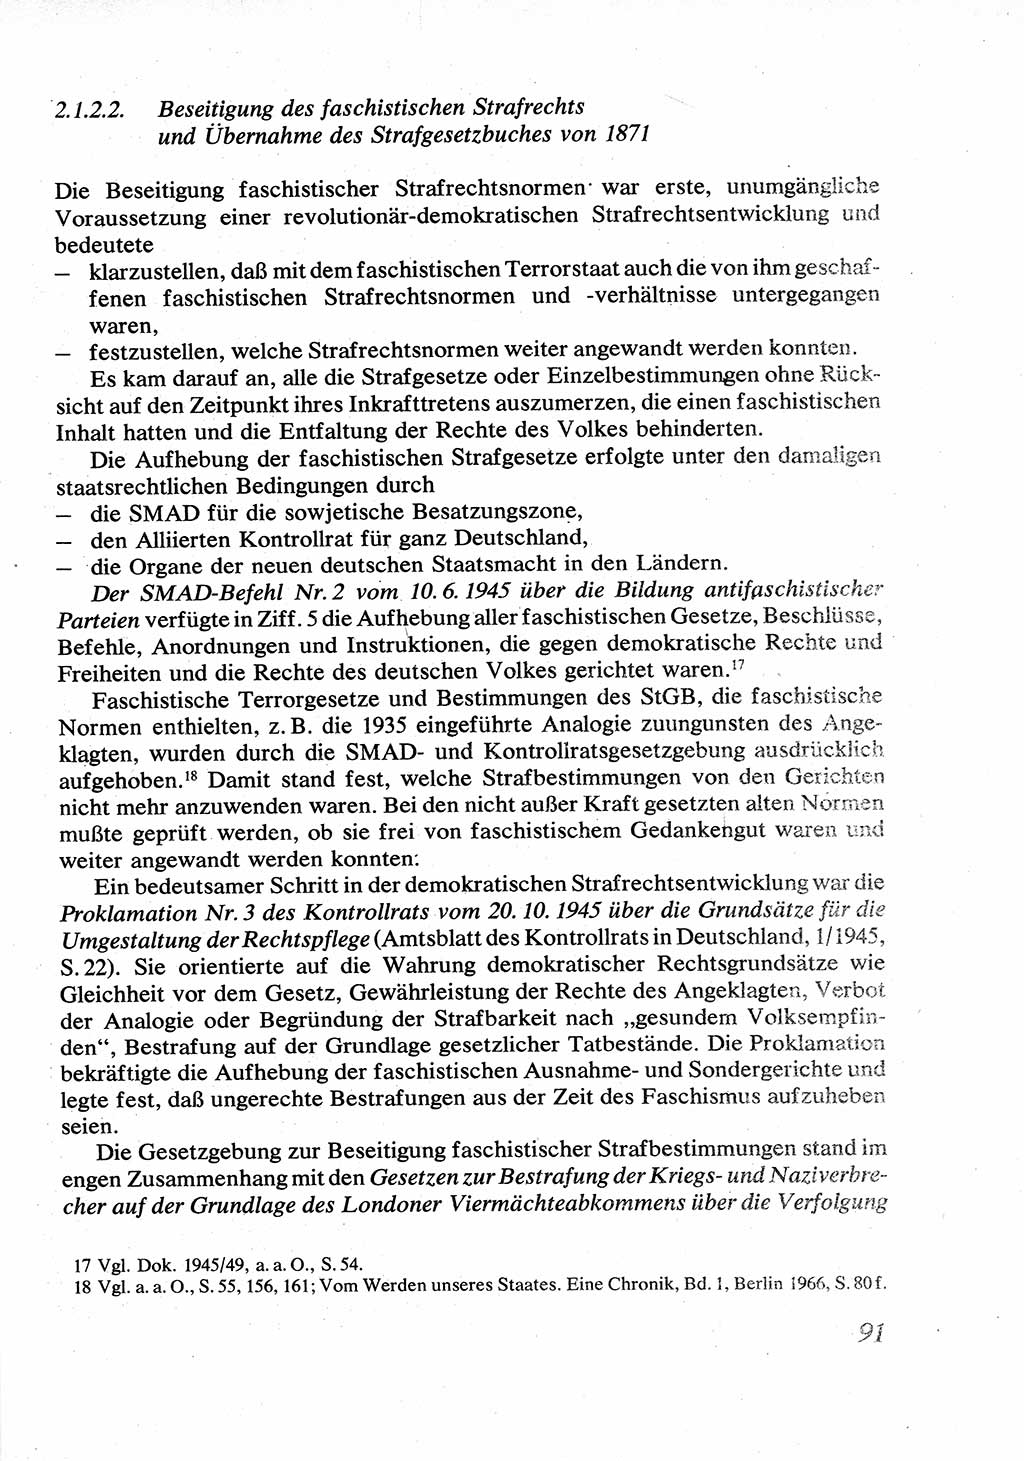 Strafrecht [Deutsche Demokratische Republik (DDR)], Allgemeiner Teil, Lehrbuch 1976, Seite 91 (Strafr. DDR AT Lb. 1976, S. 91)